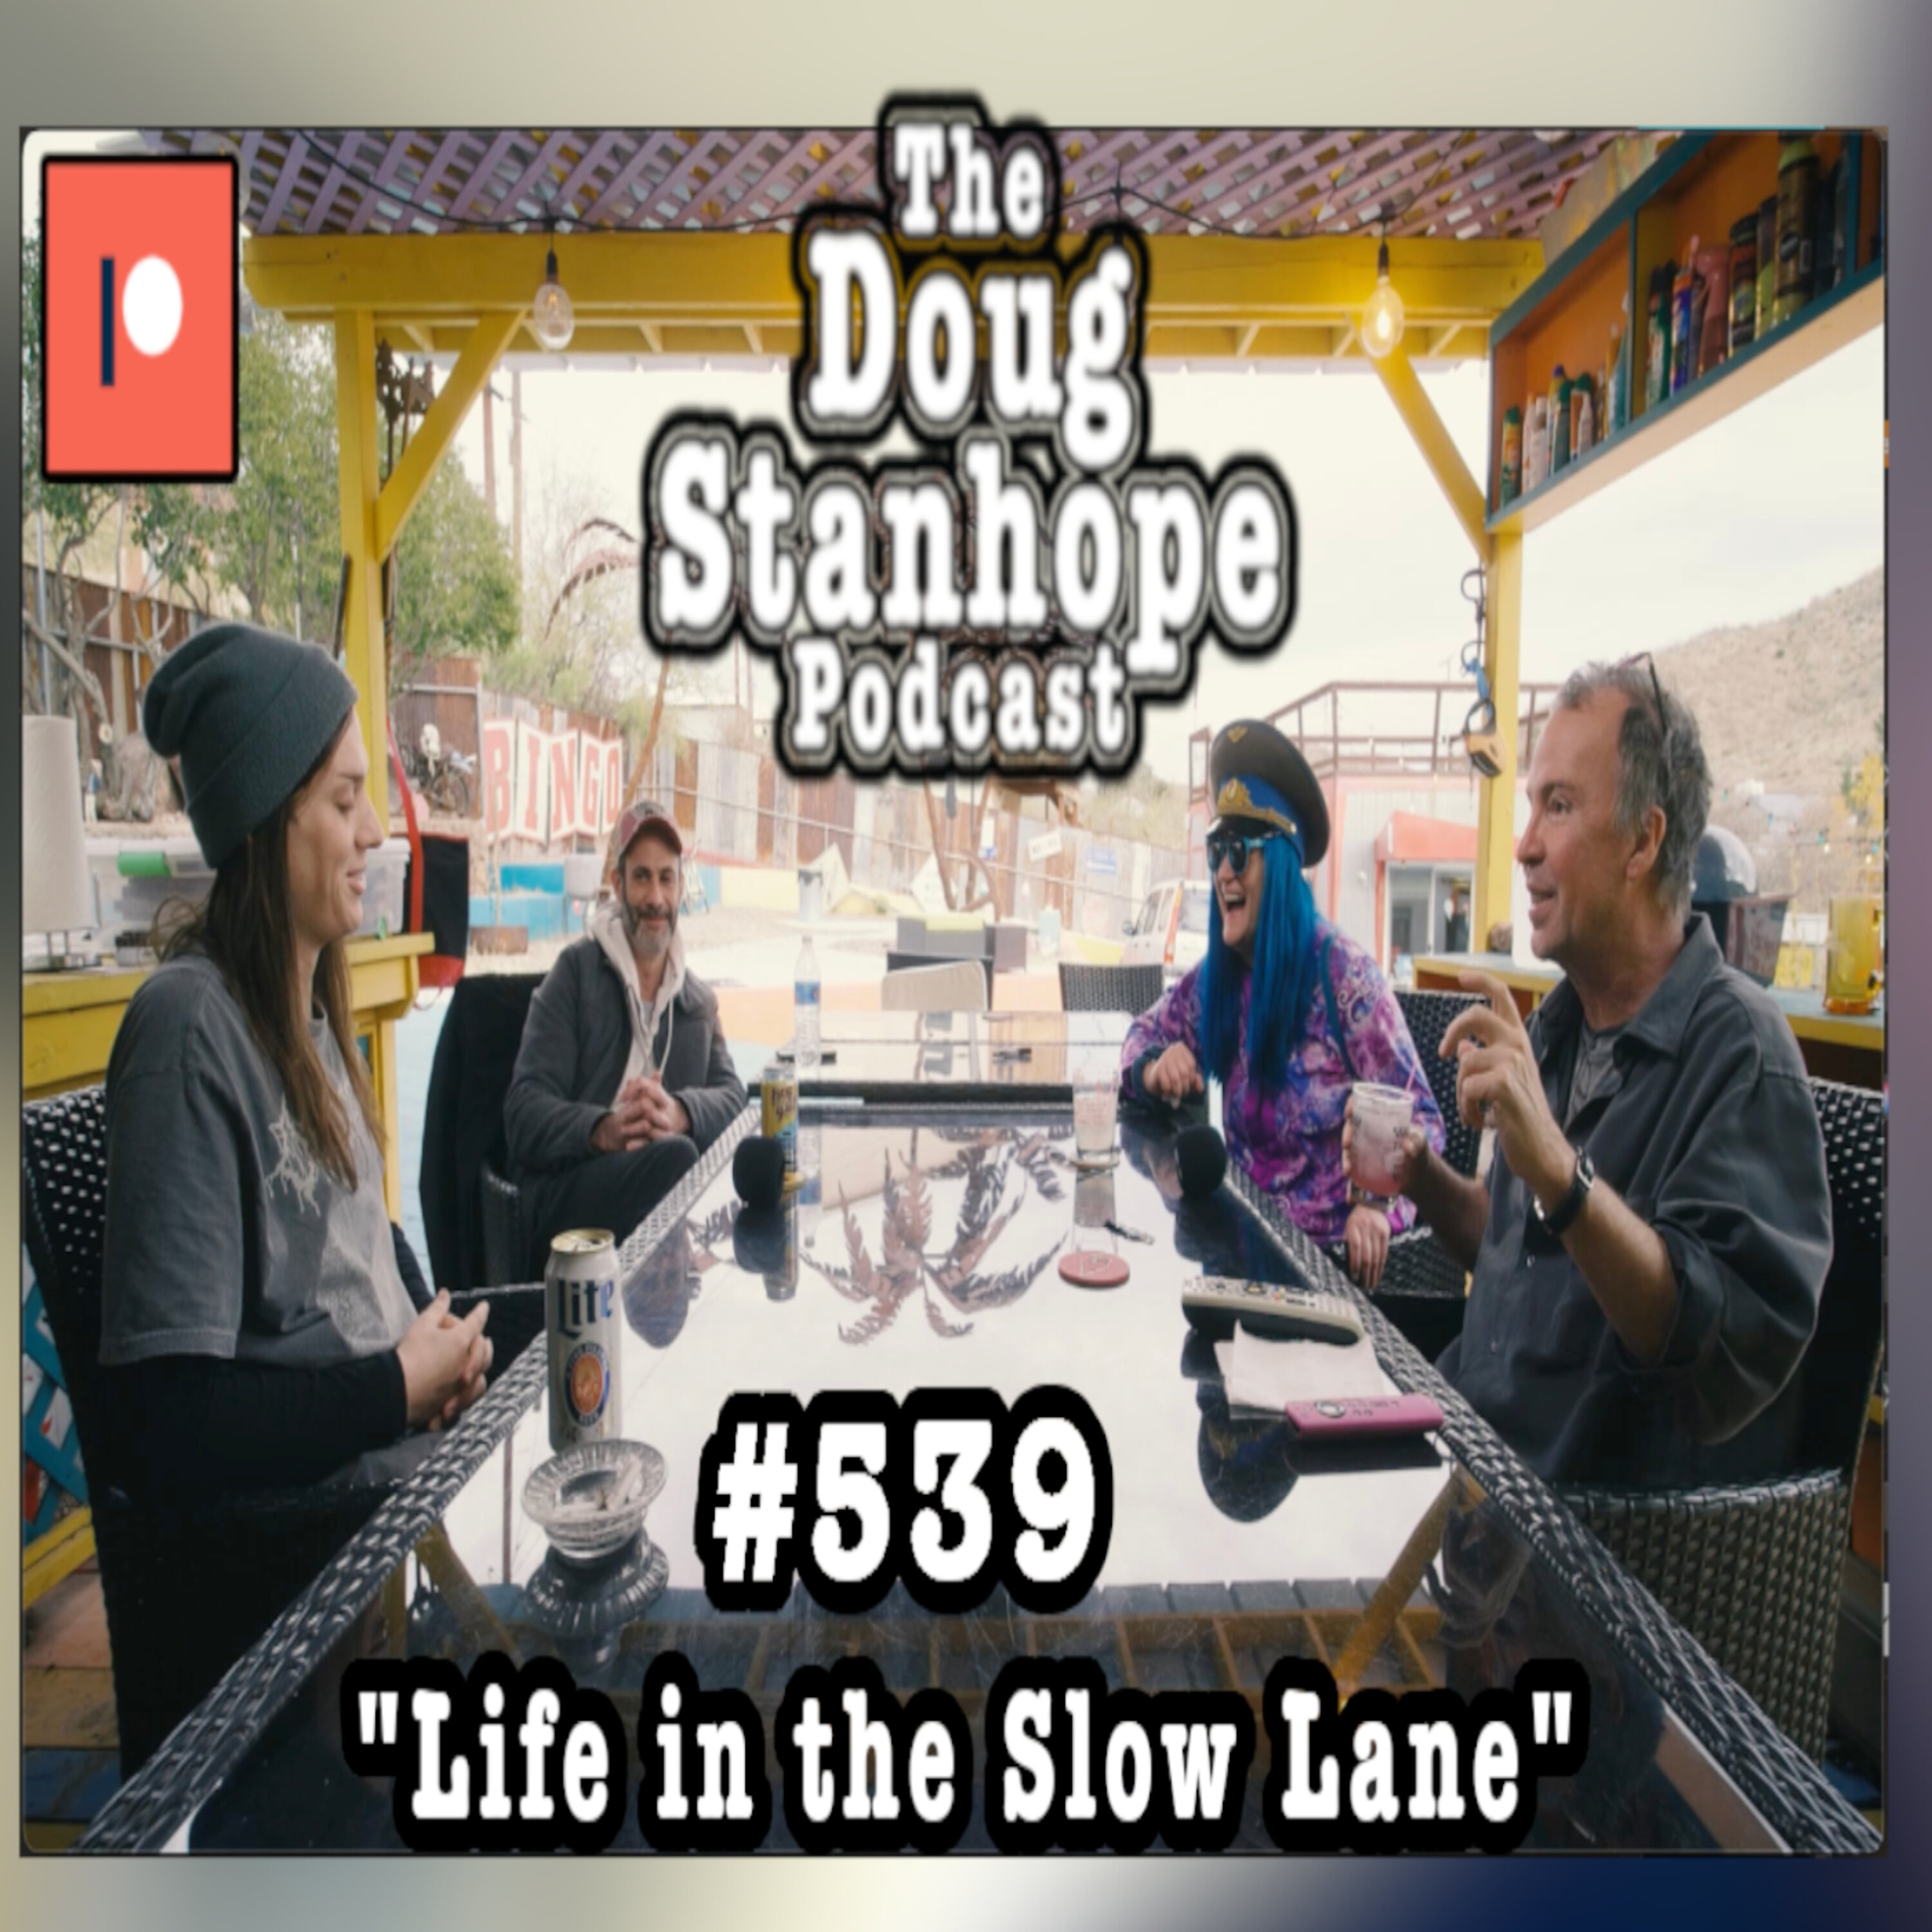 Doug Stanhope Podcast #540 - 